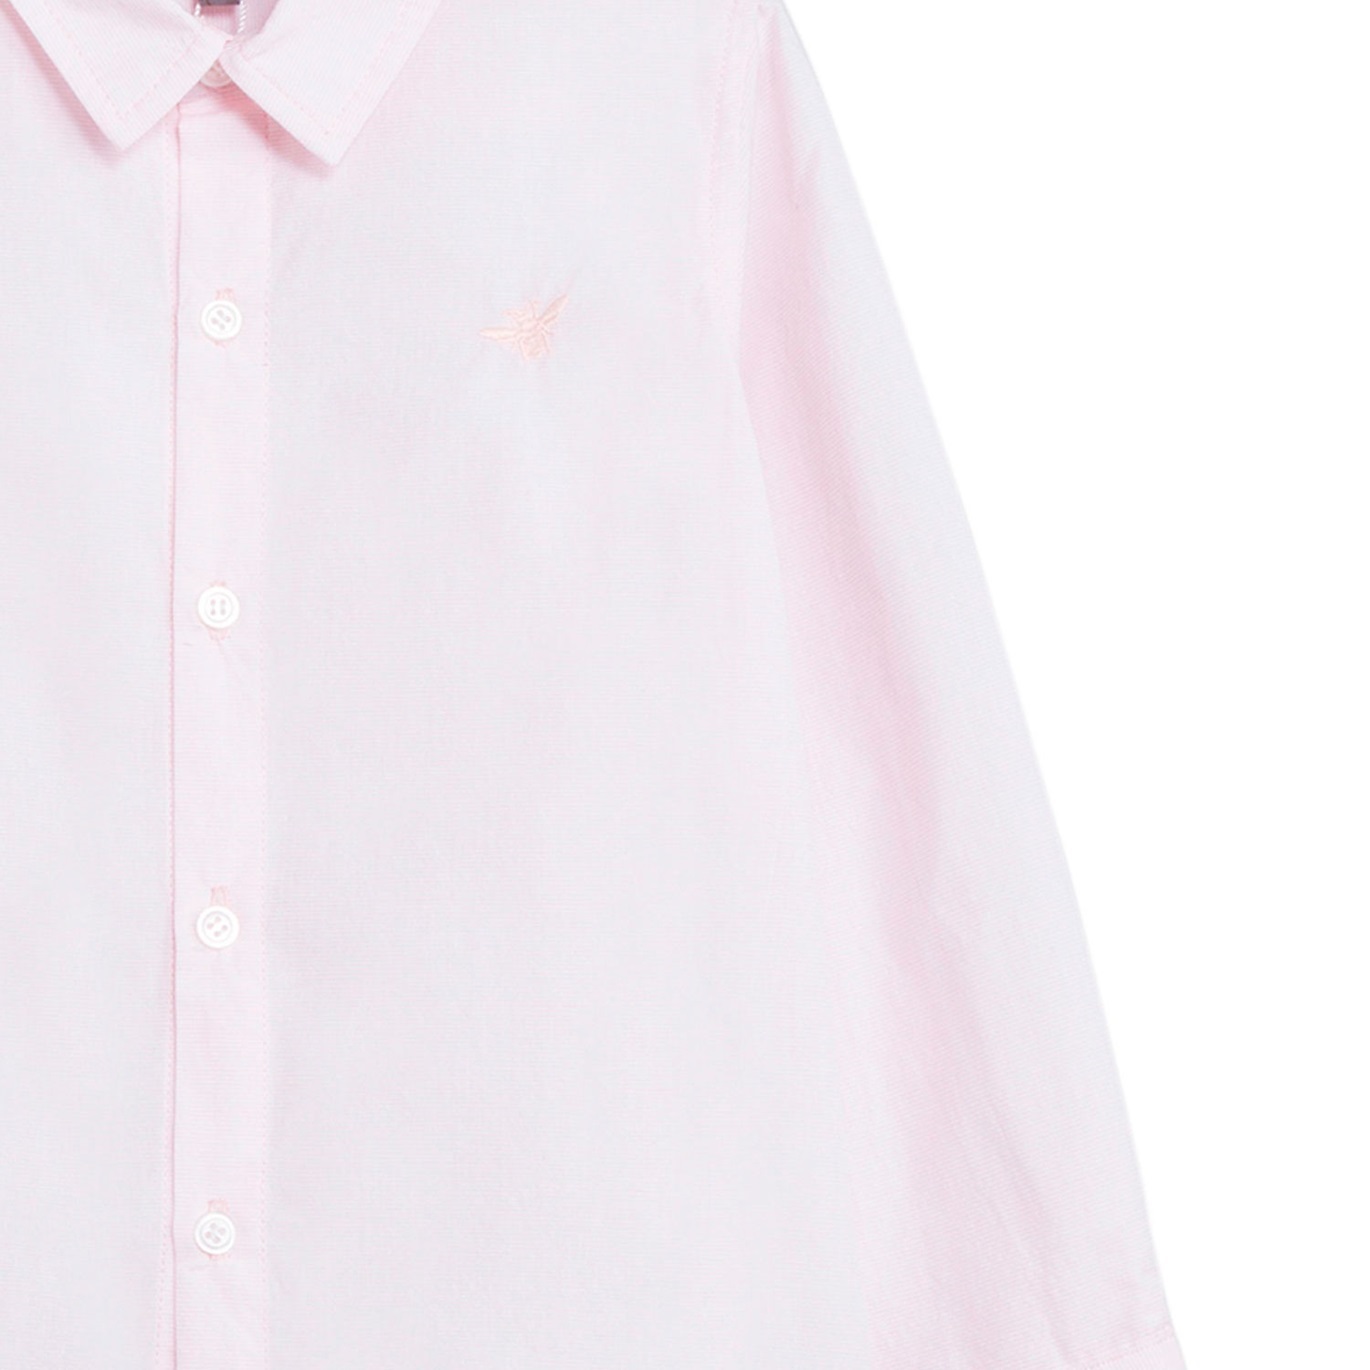 Imagen de Camisa de niño en rosa y manga larga